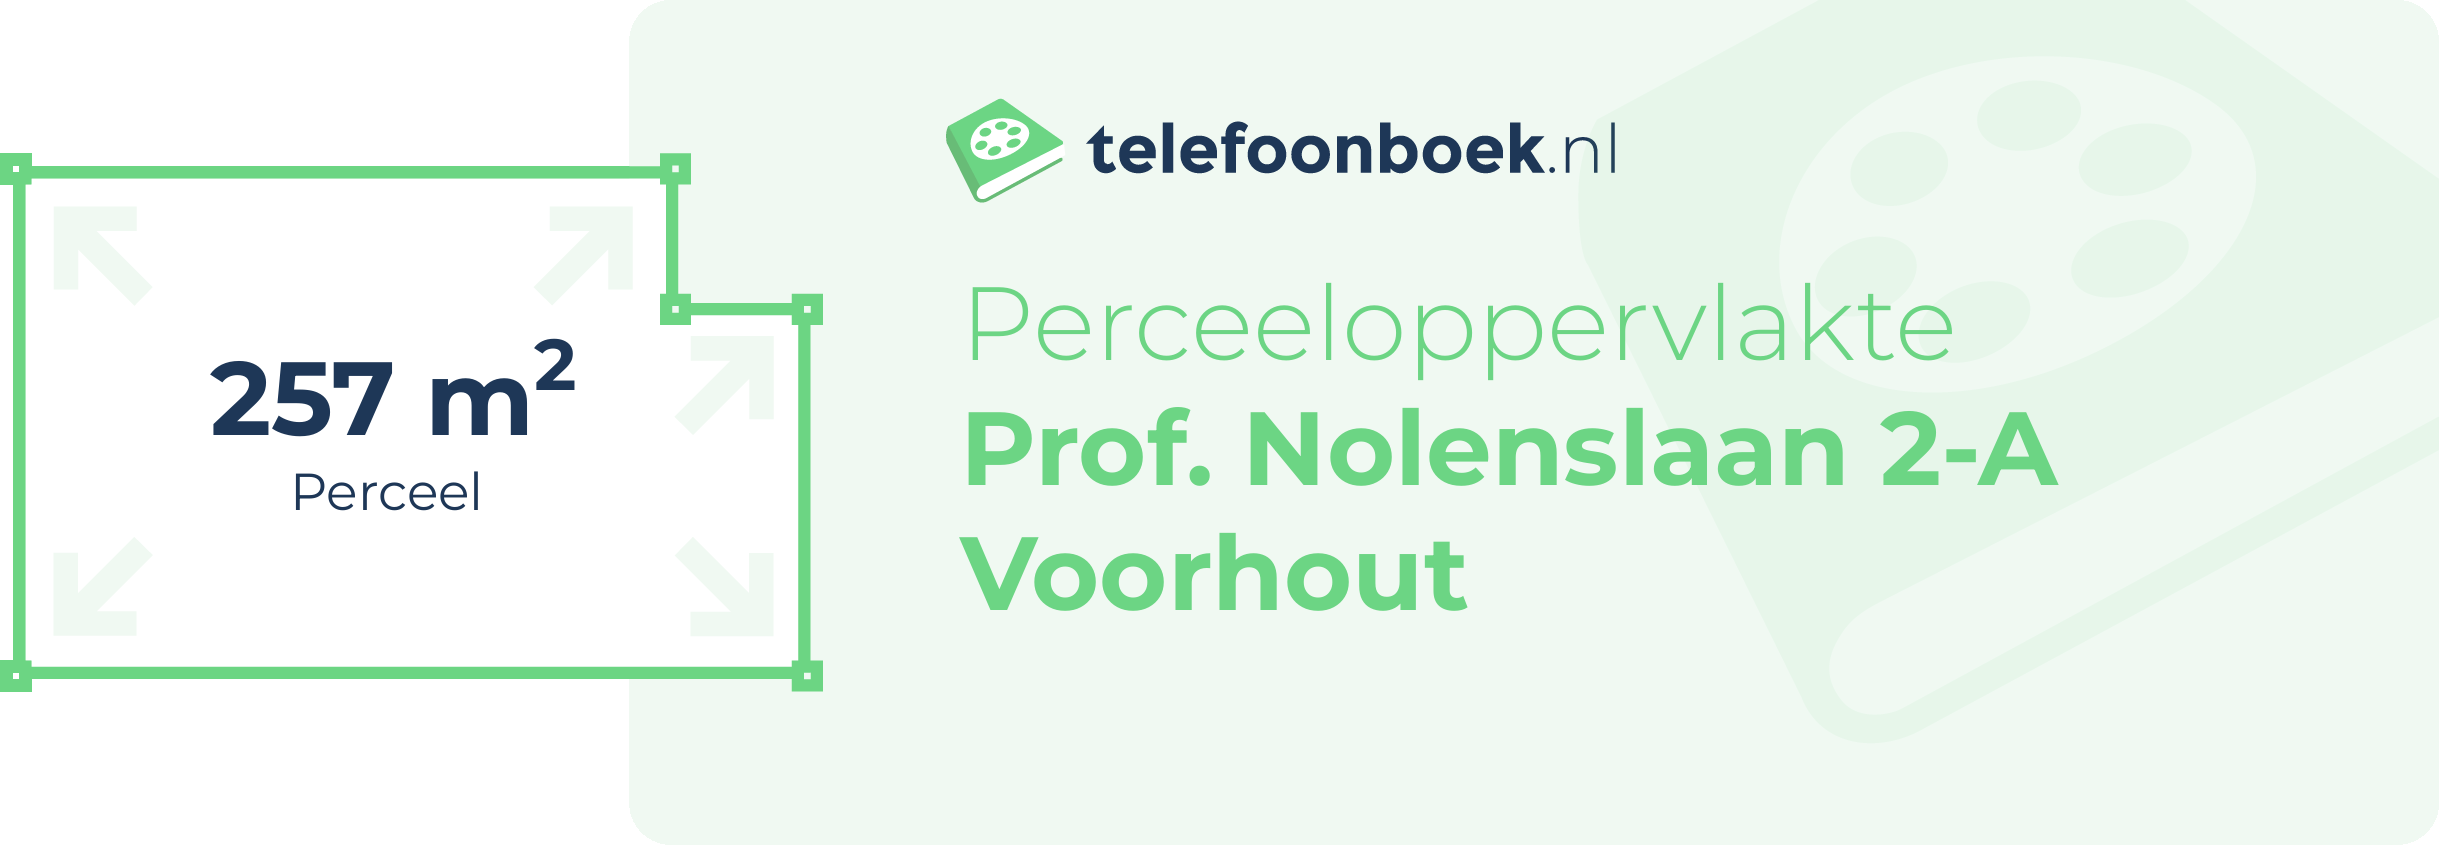 Perceeloppervlakte Prof. Nolenslaan 2-A Voorhout